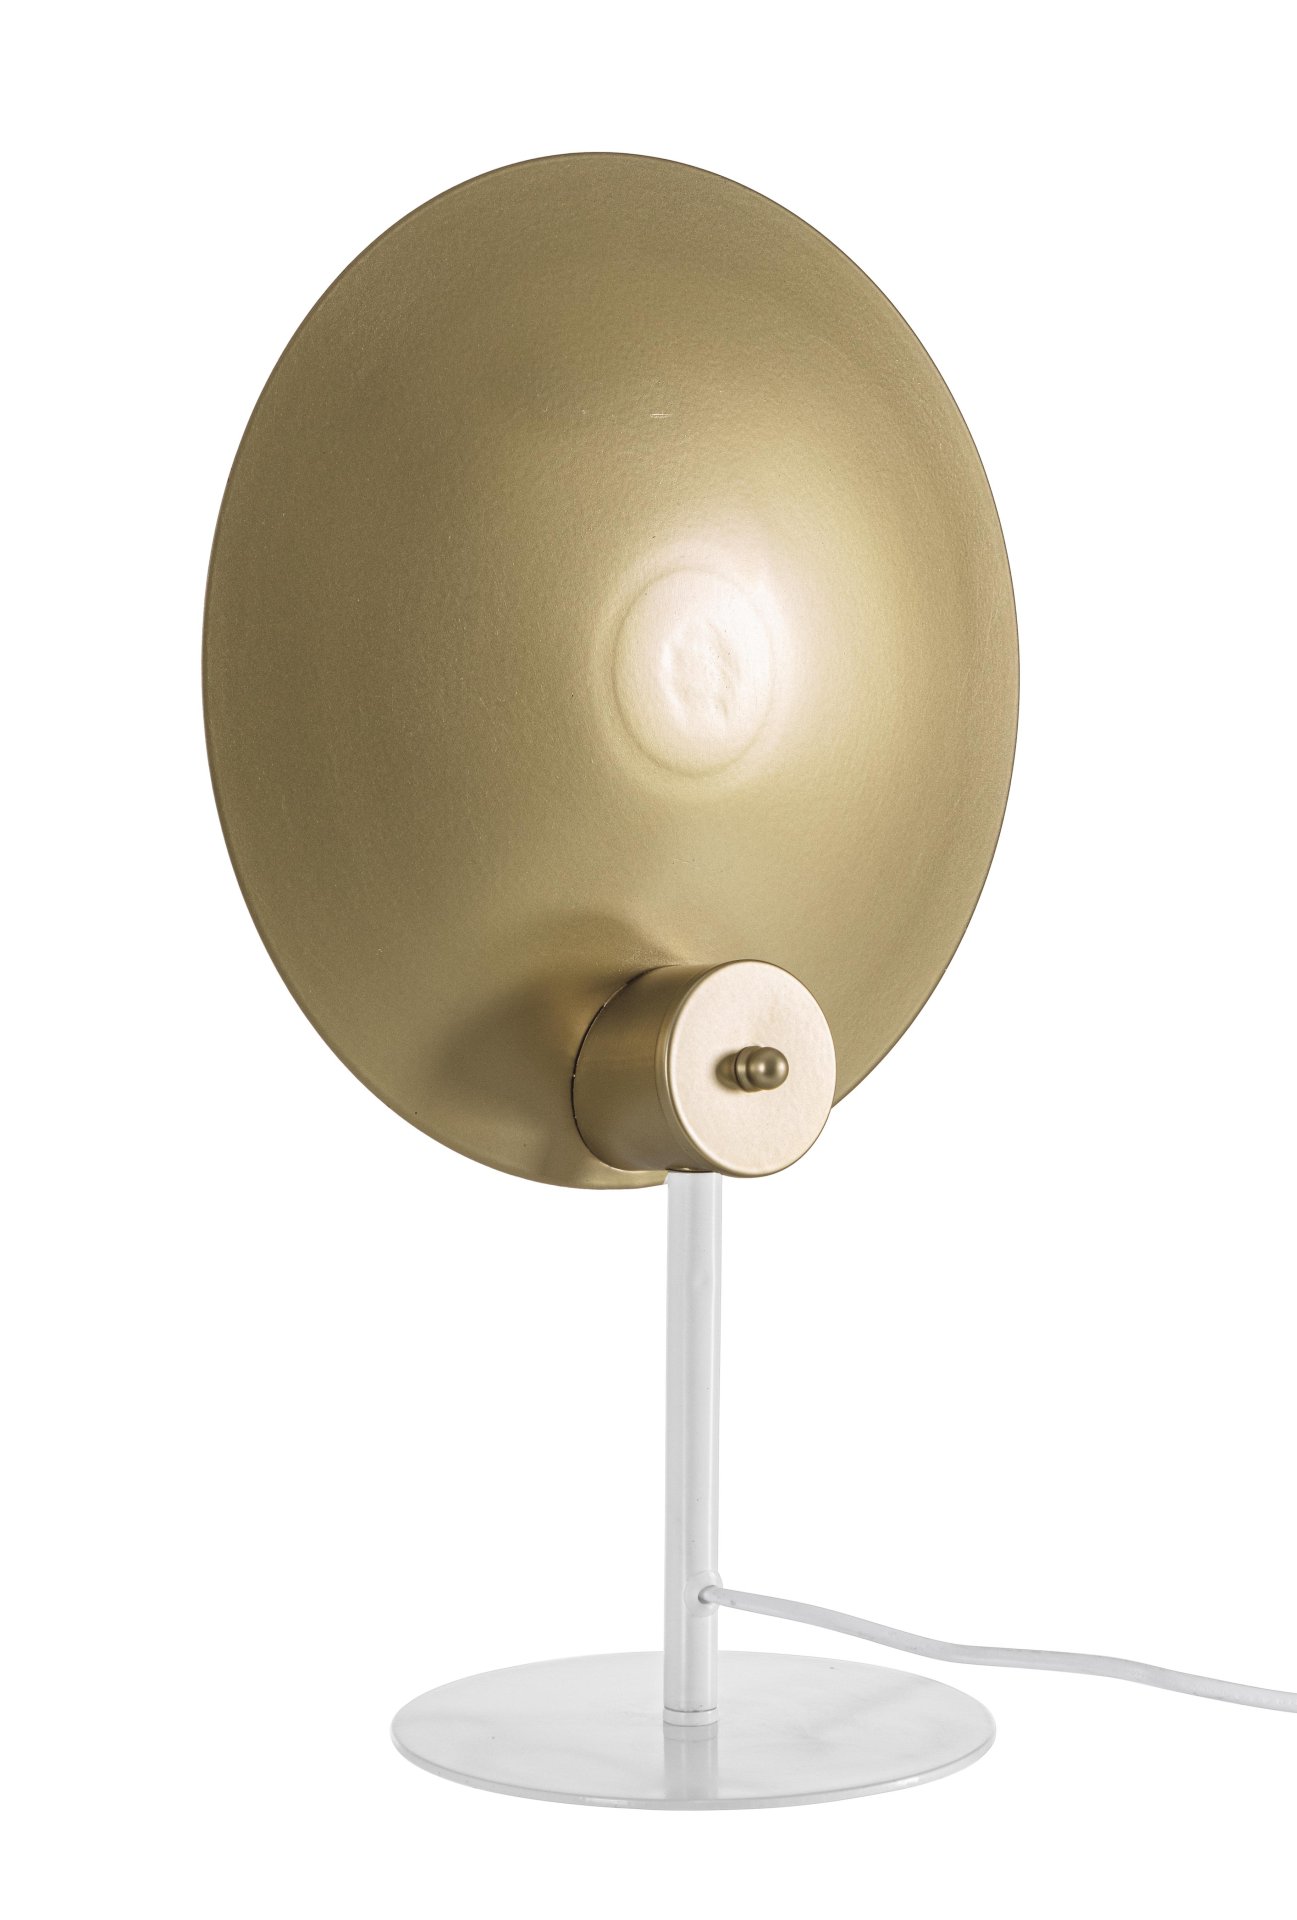 Die Tischleuchte Design überzeugt mit ihrem modernen Design. Gefertigt wurde sie aus Metall, welches einen weißen Farbton besitzt. Der Lampenschirm ist auch aus Metall und hat eine goldene Farbe. Die Lampe besitzt eine Höhe von 46 cm.